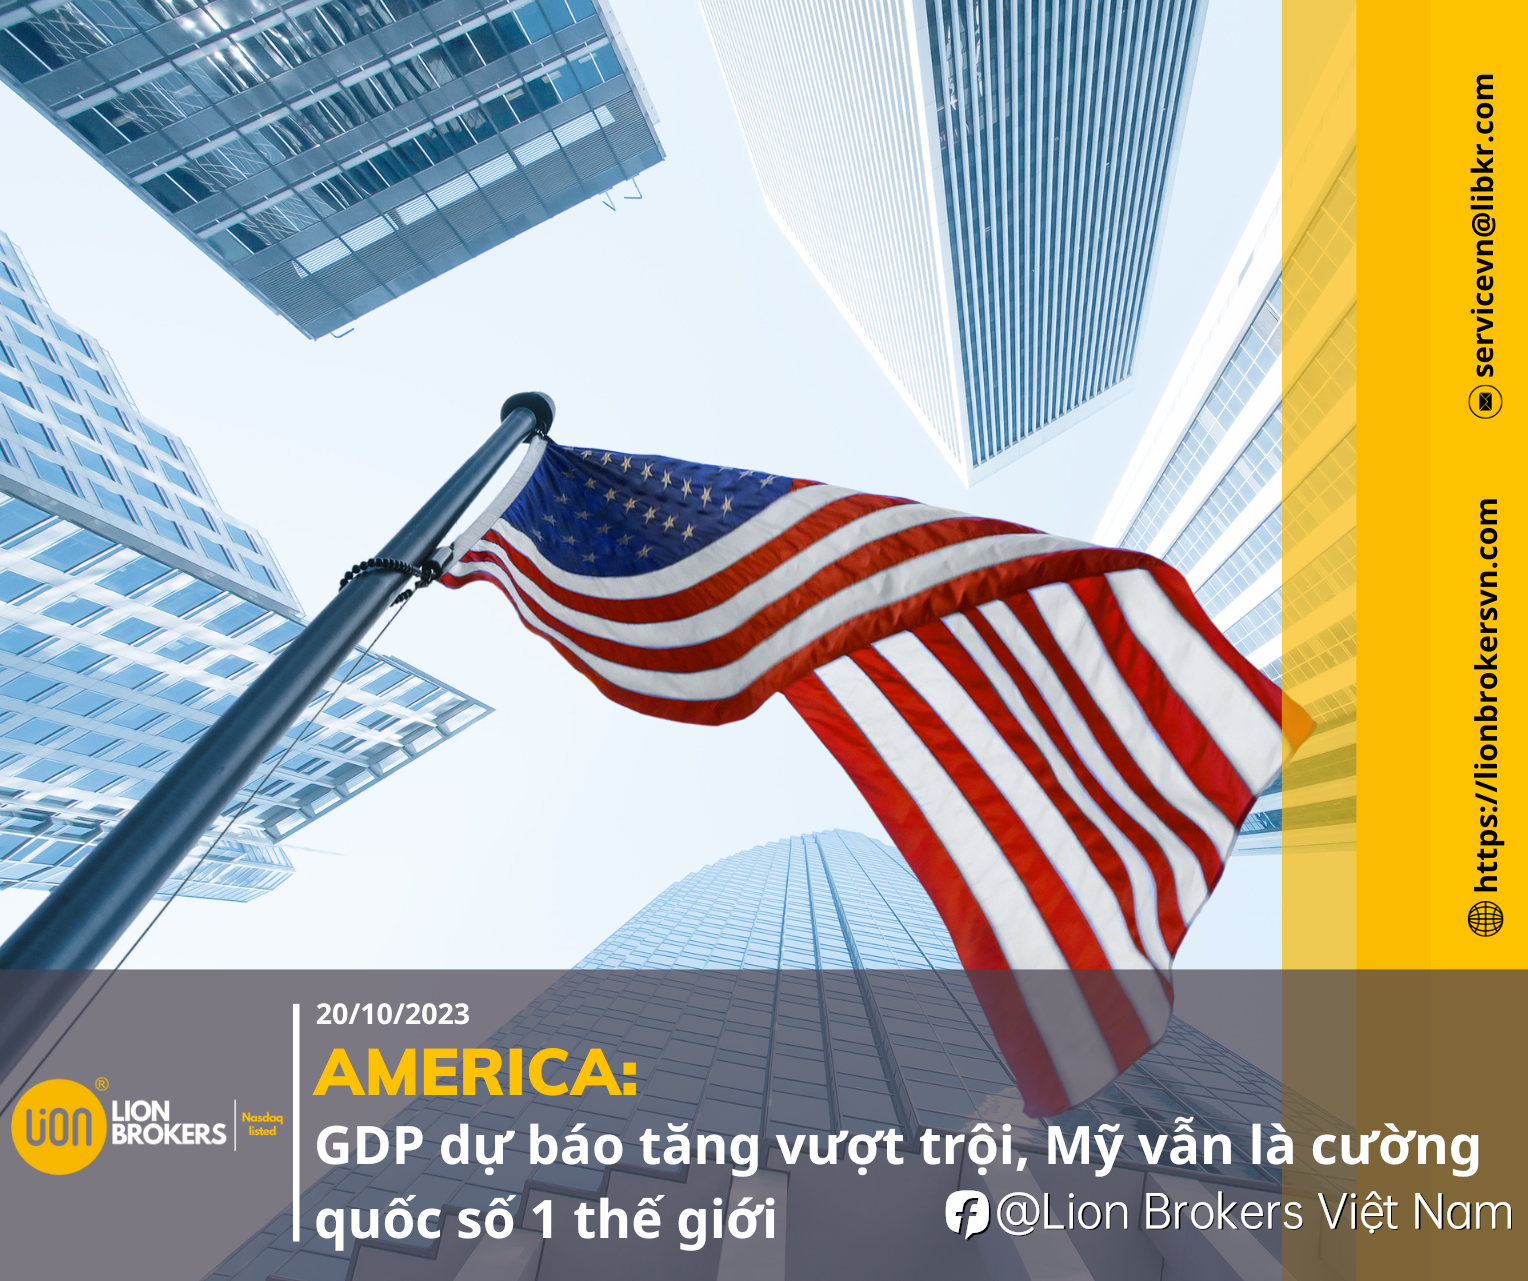 AMERICA: GDP DỰ BÁO TĂNG VƯỢT TRỘI, MỸ VẪN LÀ CƯỜNG QUỐC SỐ 1 THẾ GIỚI